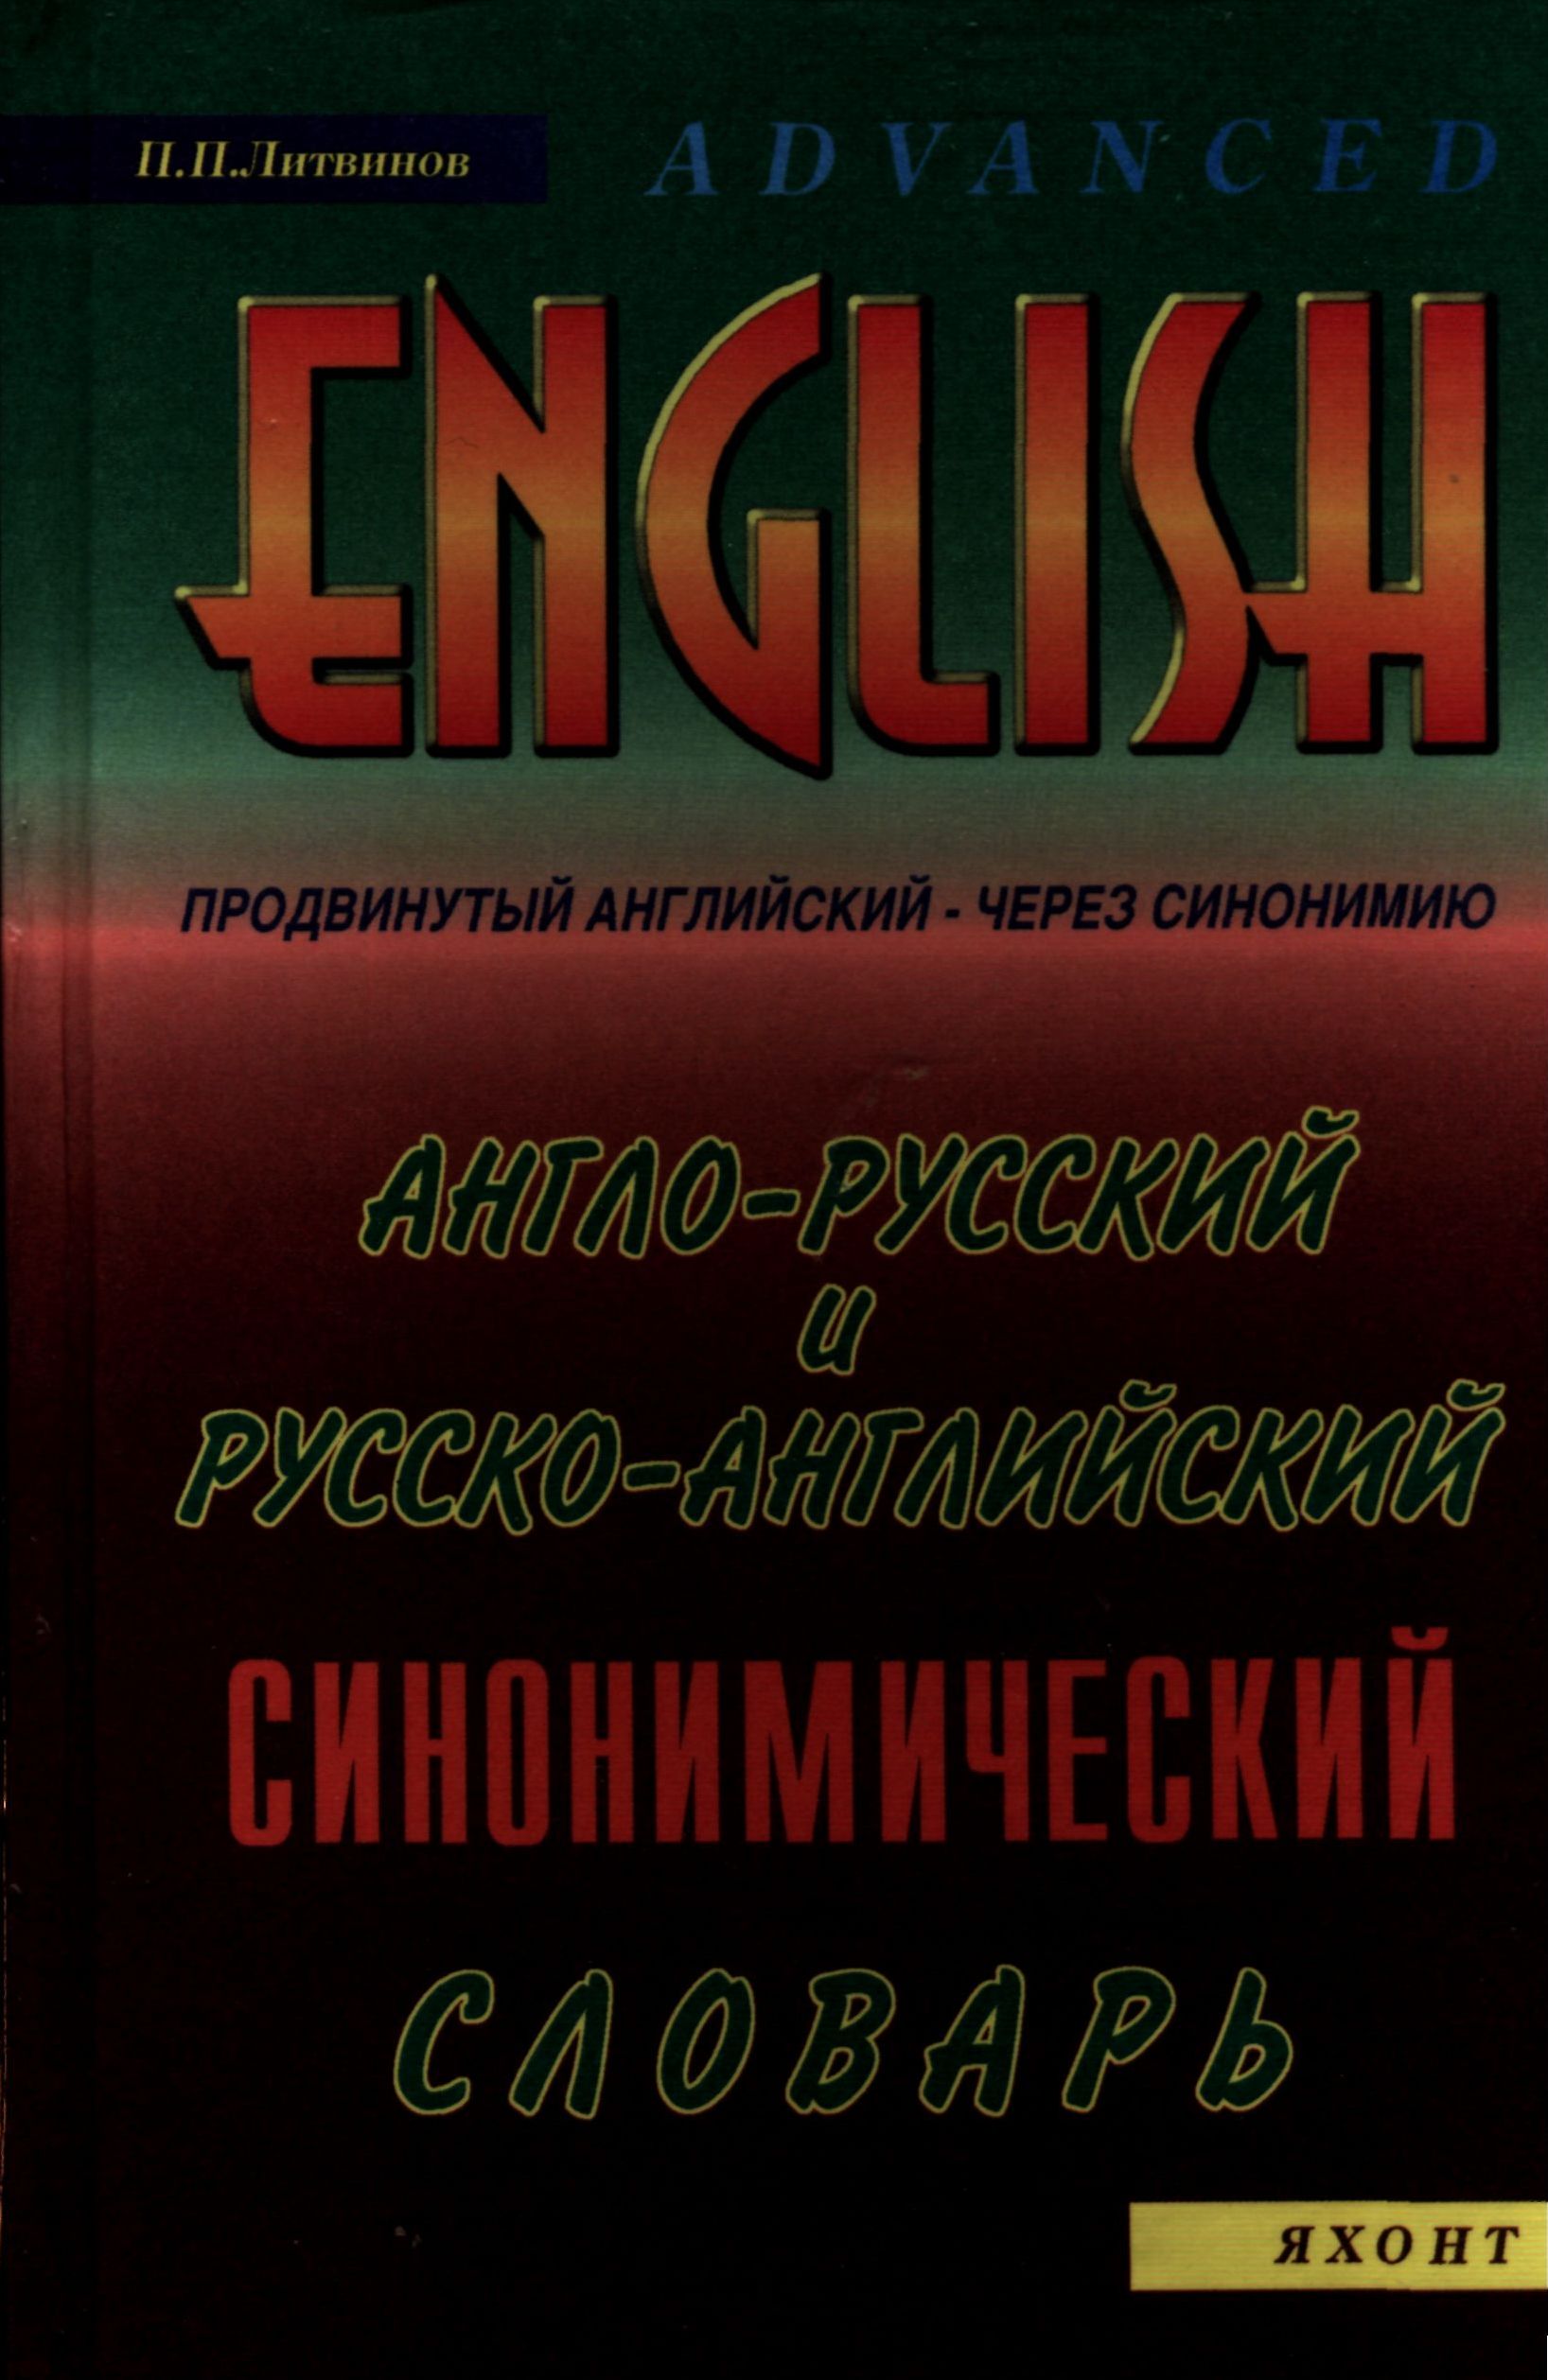 Скачать англо русский технический словарь в pdf